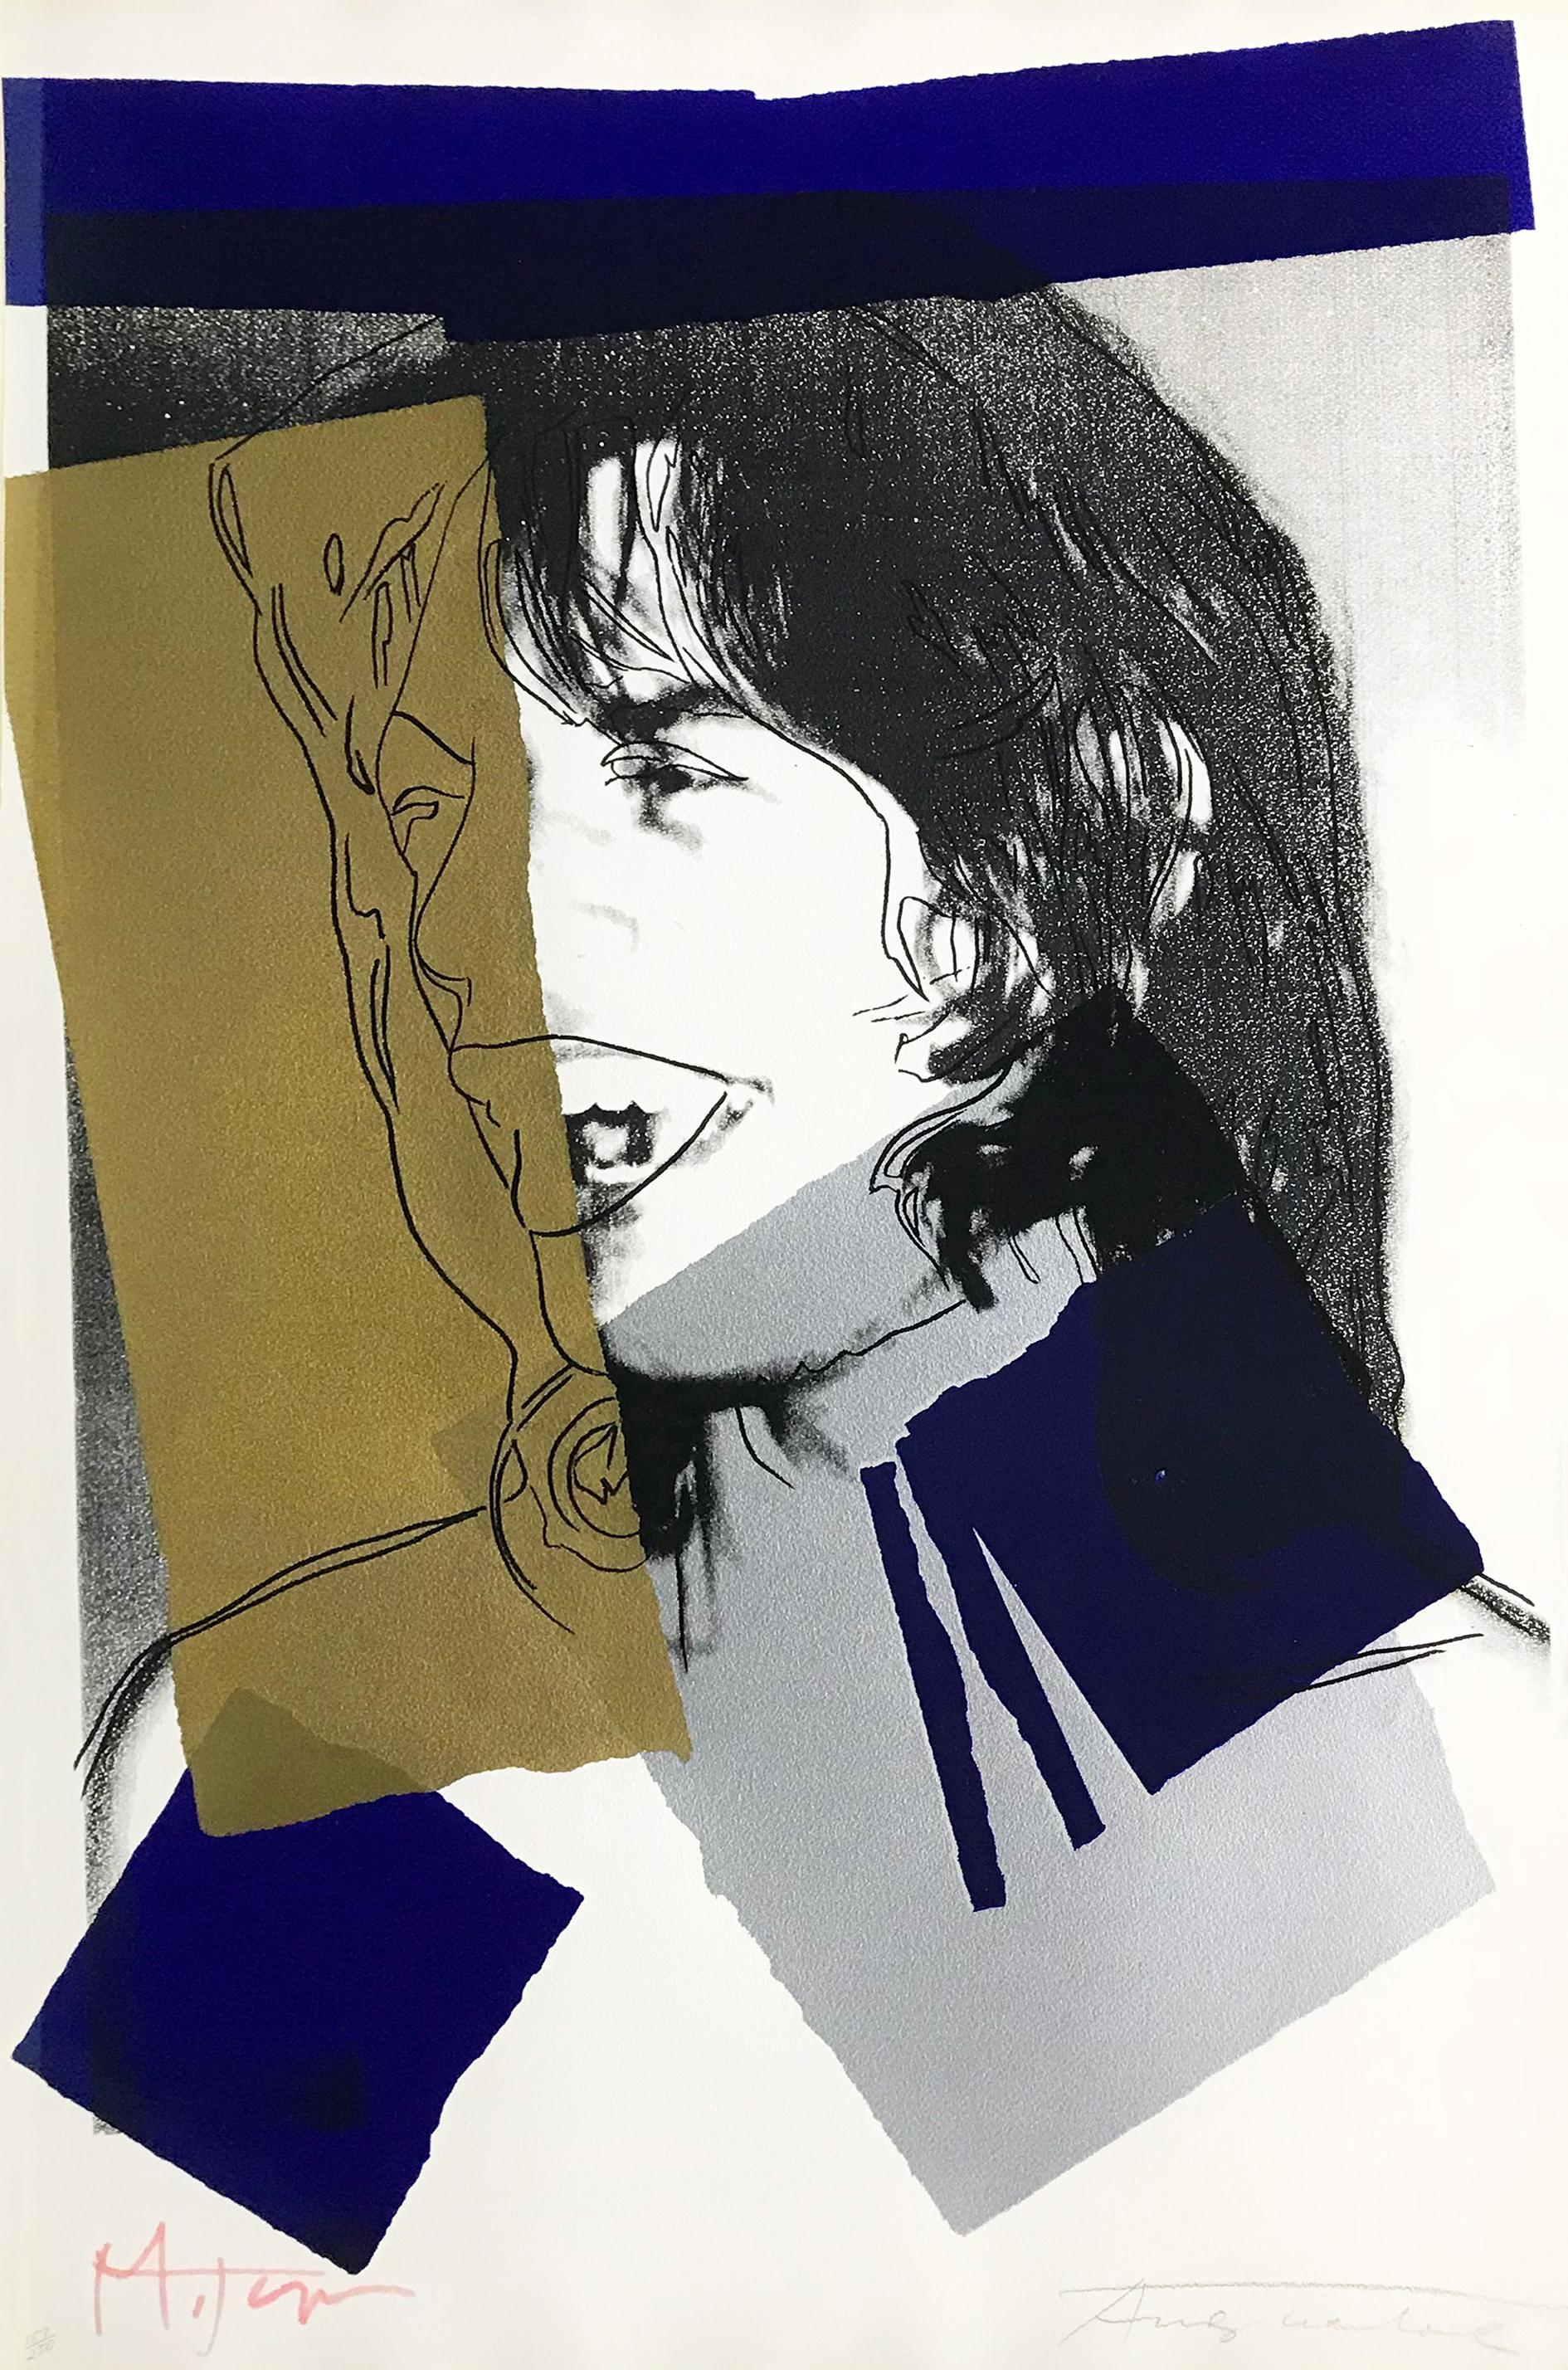 MICK JAGGER FS II.142 - Print by Andy Warhol